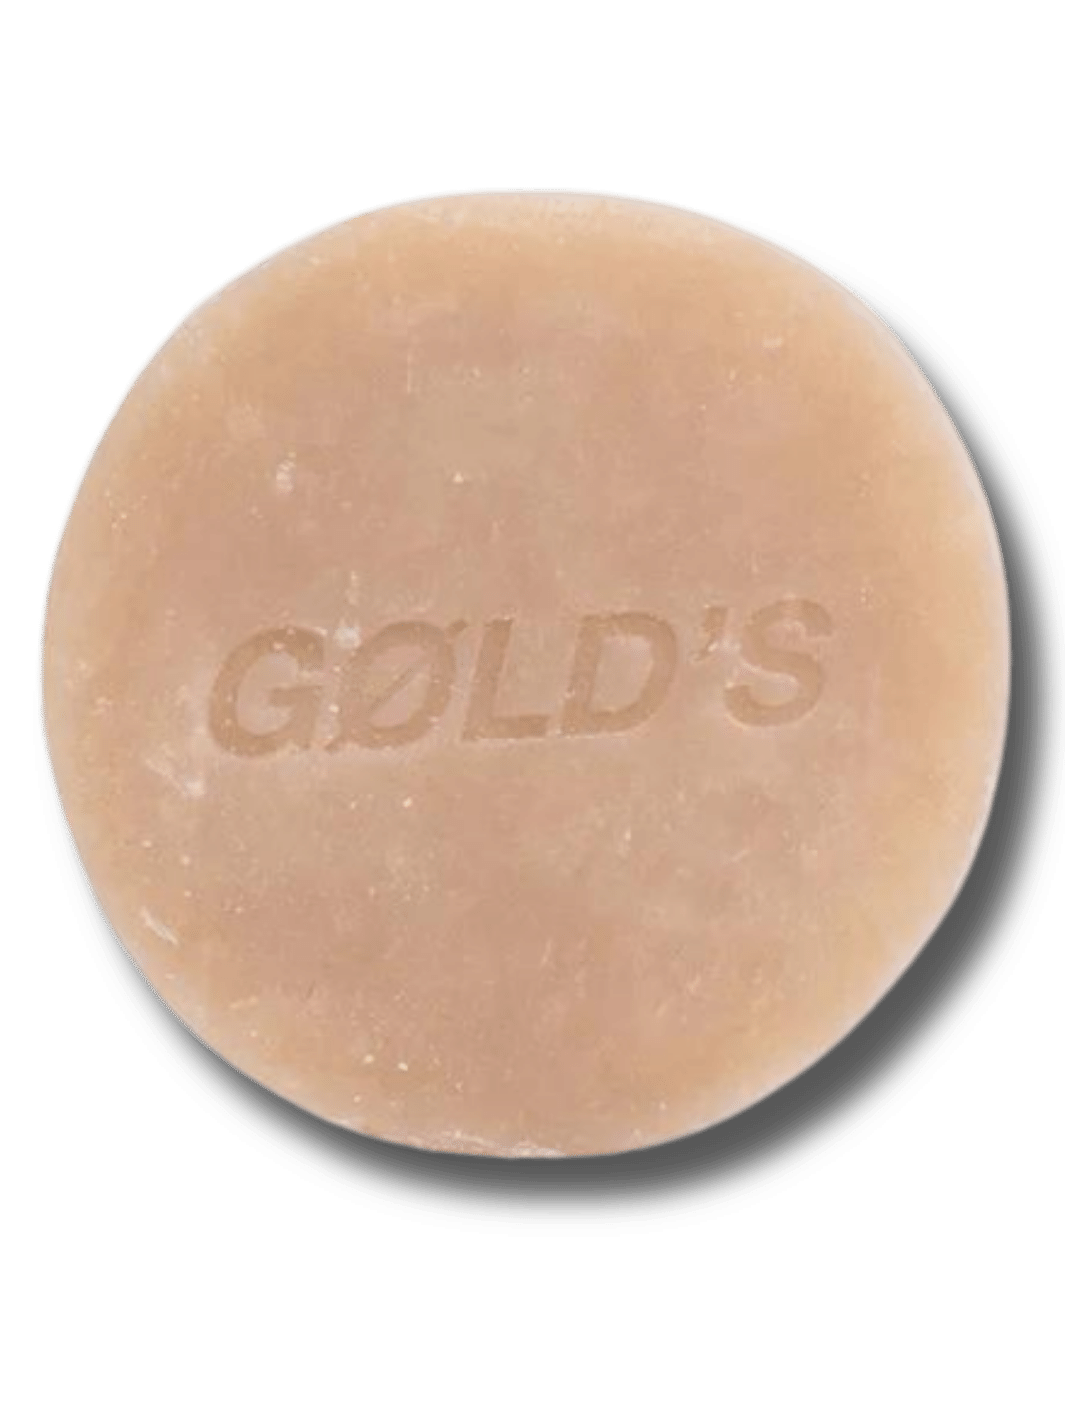 GØLD'S natürliche Rasierseife verpackt in umweltfreundlichem Material, erhältlich bei Phullcutz, ideal für eine sanfte und pflegende Rasur.